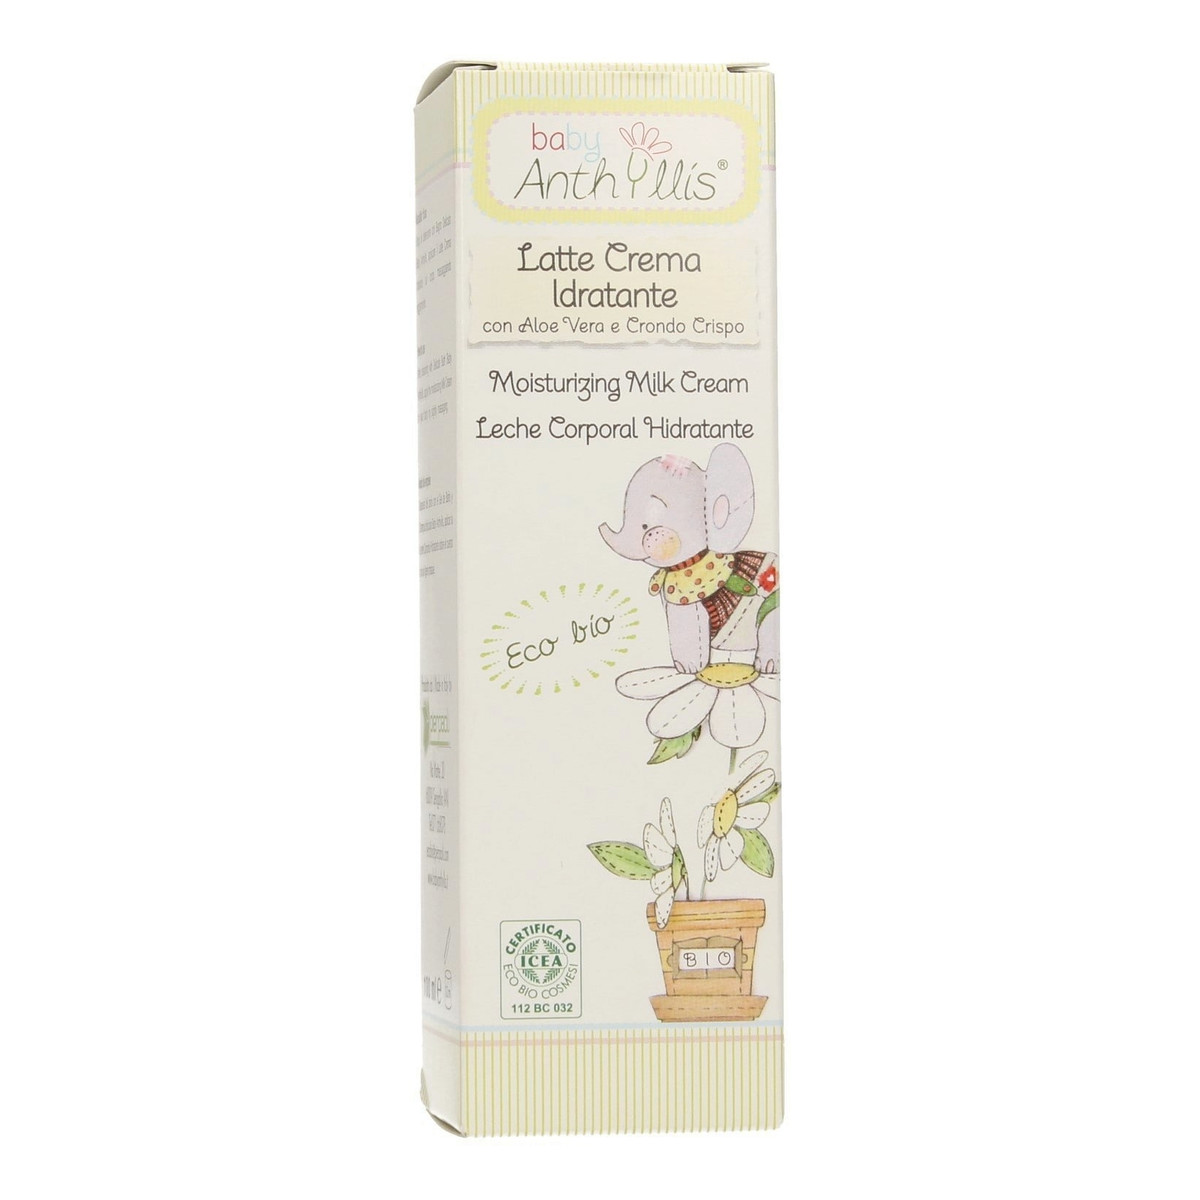 Anthyllis Baby Latte Crema Idratante Nawilżające mleczko do ciała dla dzieci 100ml